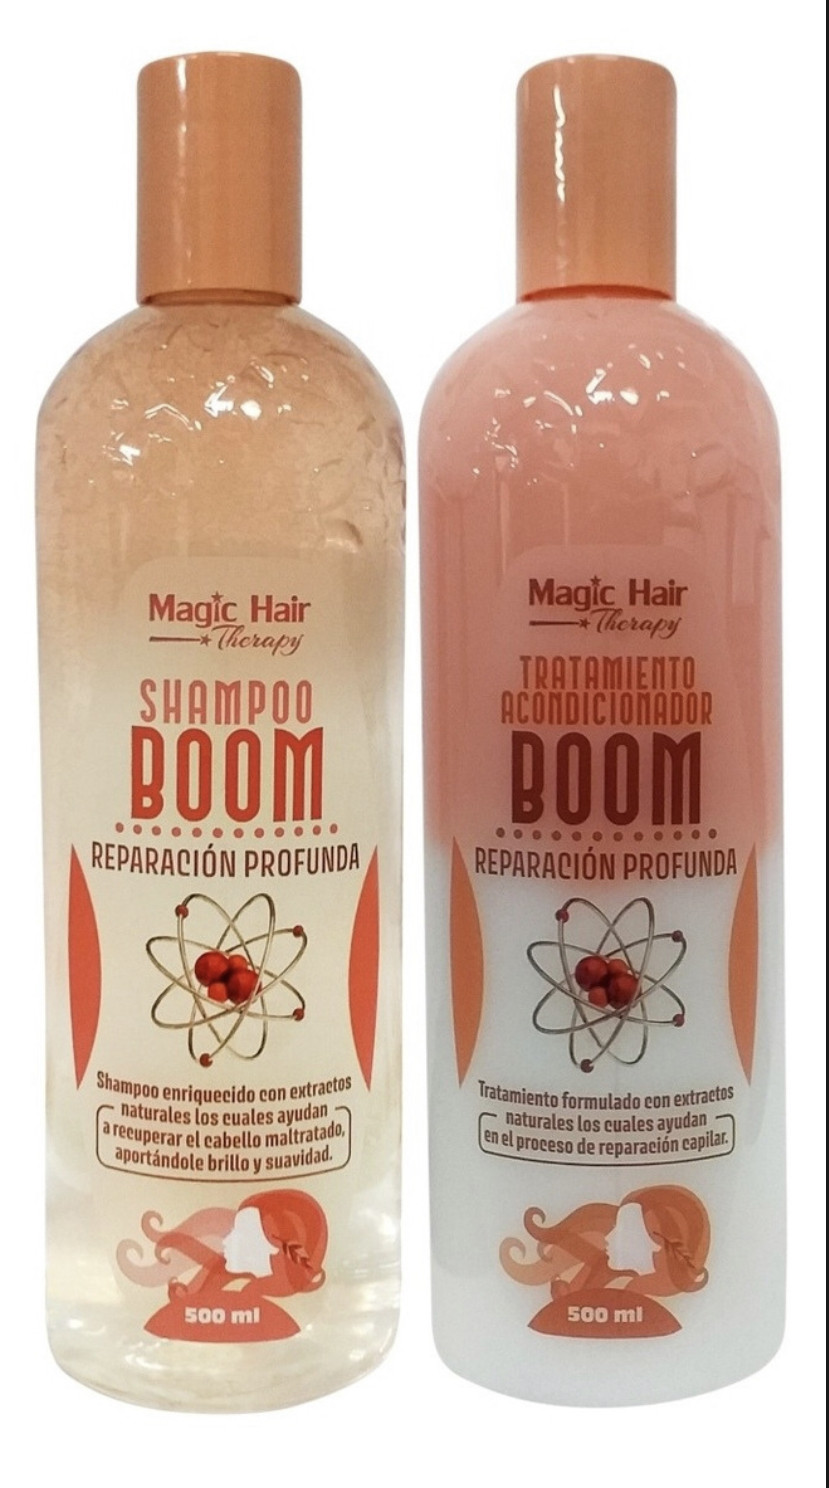 Imagen Kit Shampoo y Acondicionador Boom Magic Hair